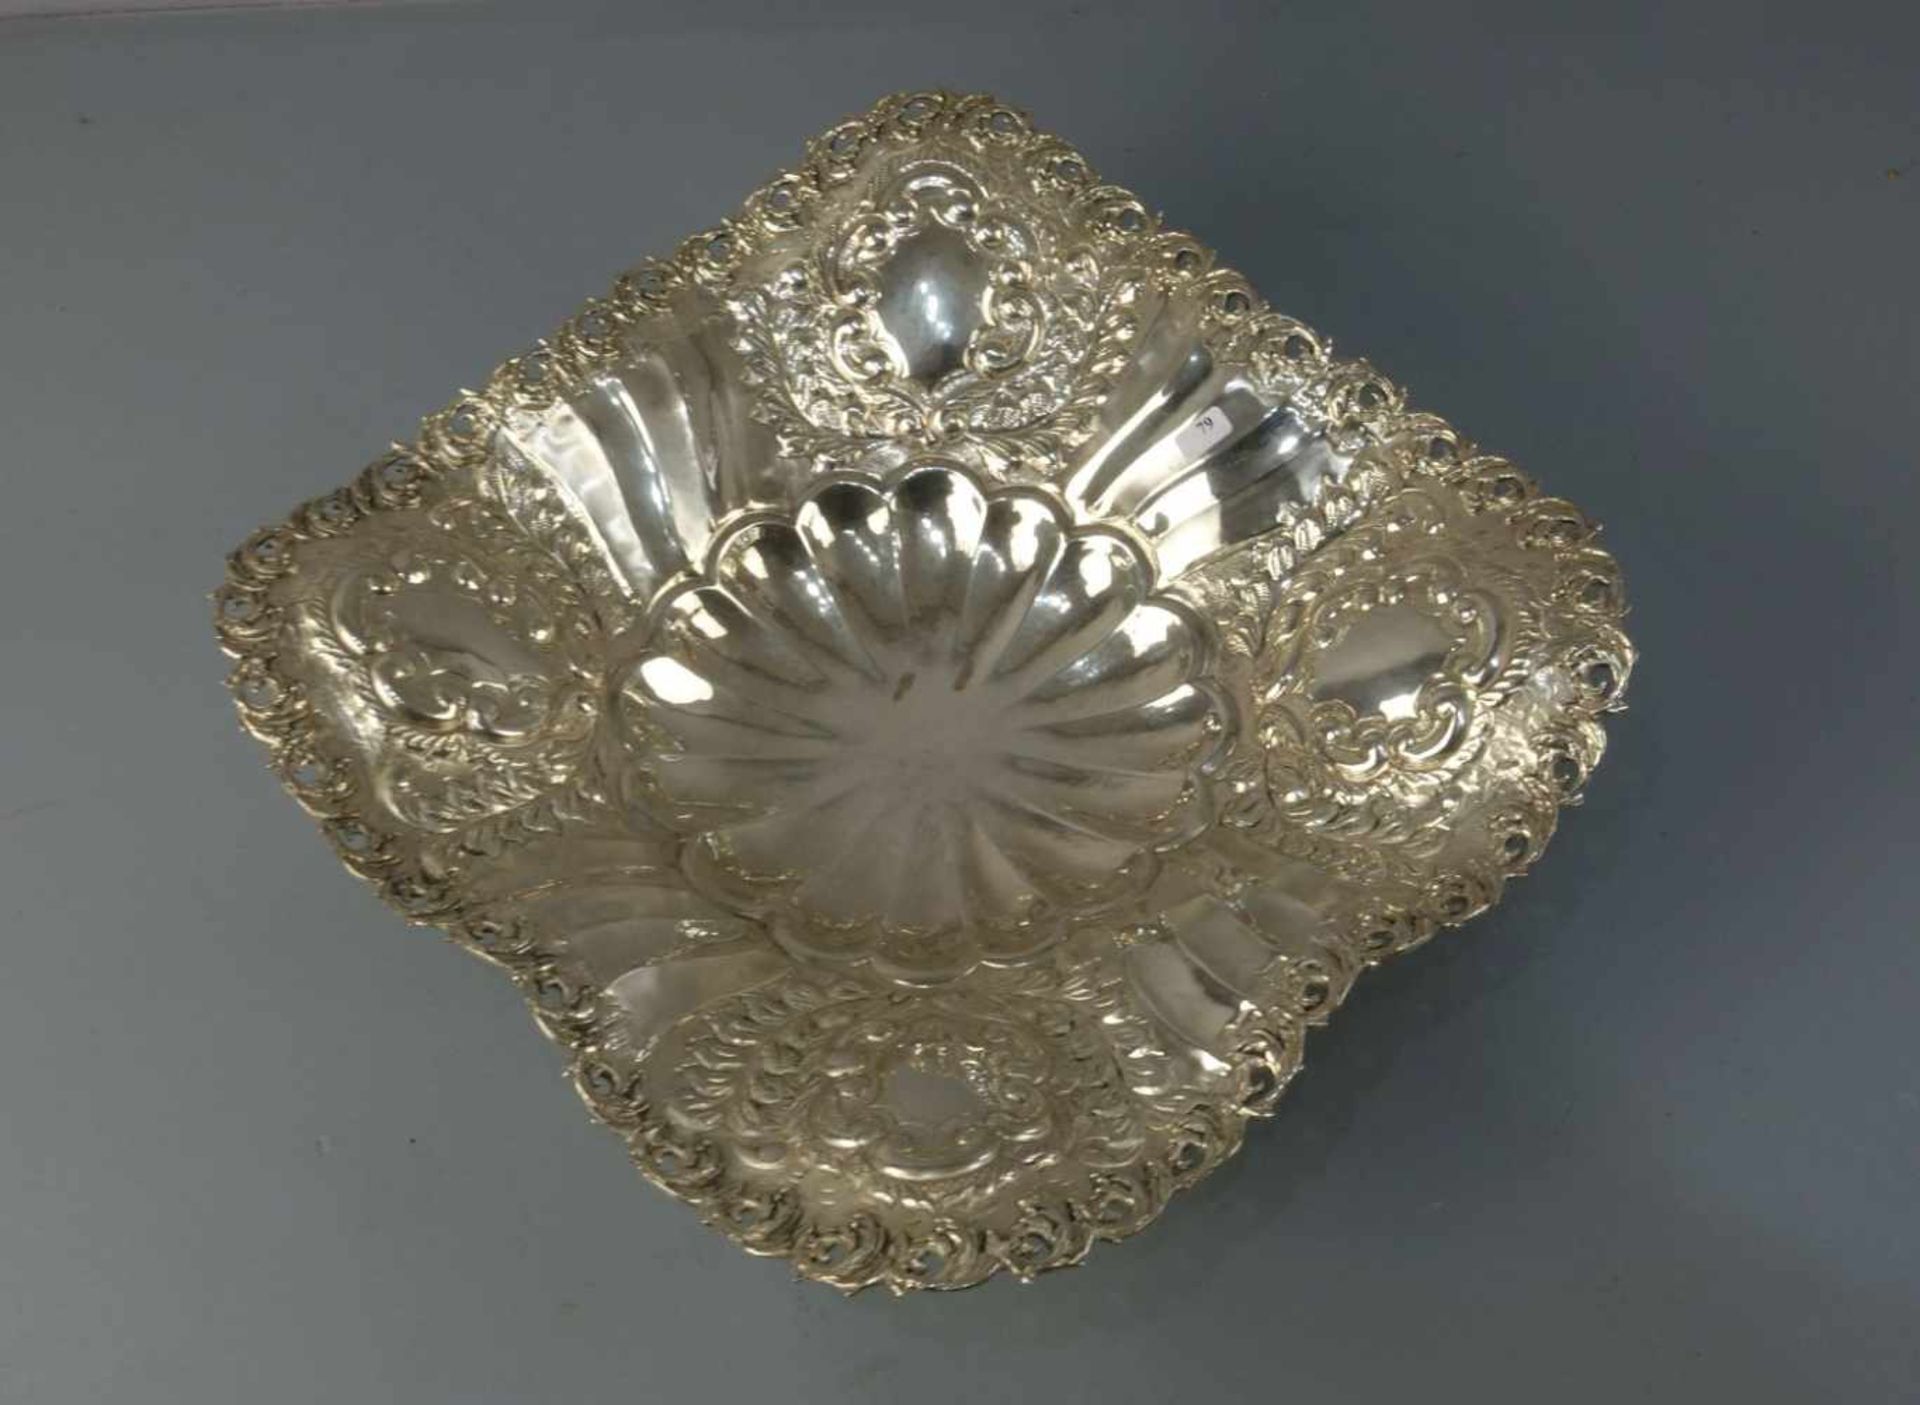 SILBERNE KARREESCHALE / silver bowl, 900er Silber (1133,5 g), gepunzt mit Feingehaltsangabe und